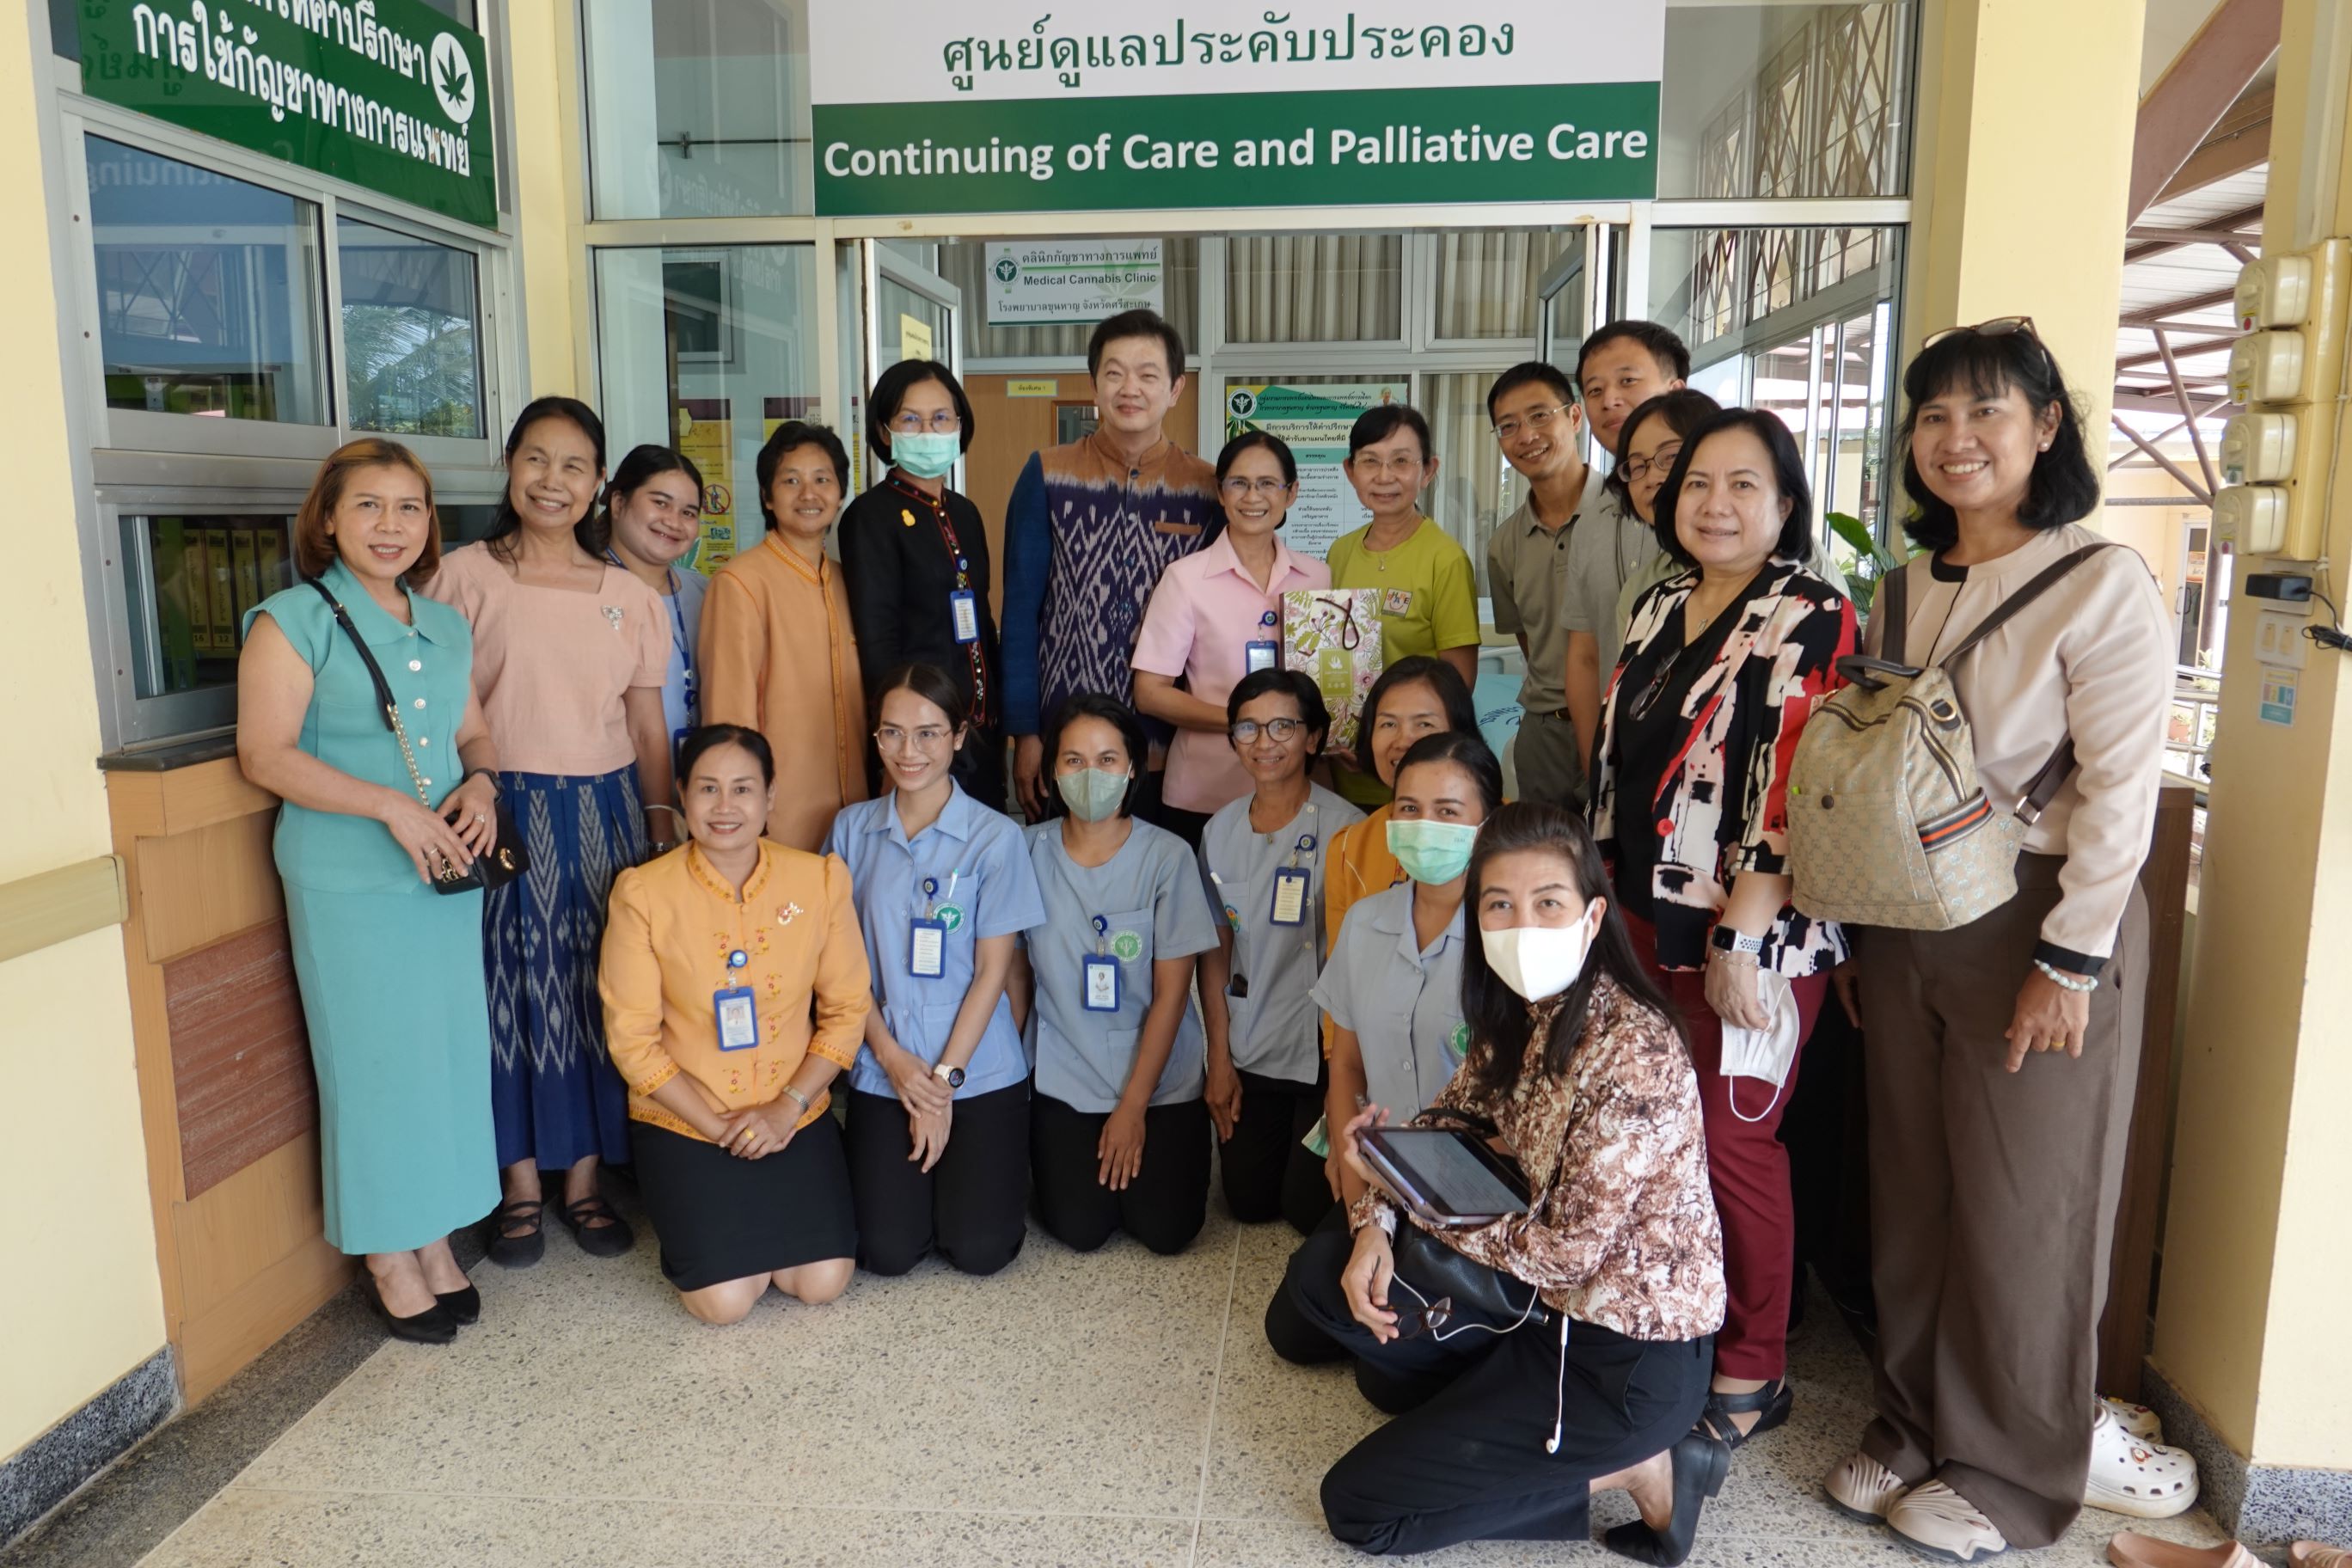  泰國傳統醫藥司副司長Dr. Khwanchai帶領參訪泰國Khunhan醫院合影。